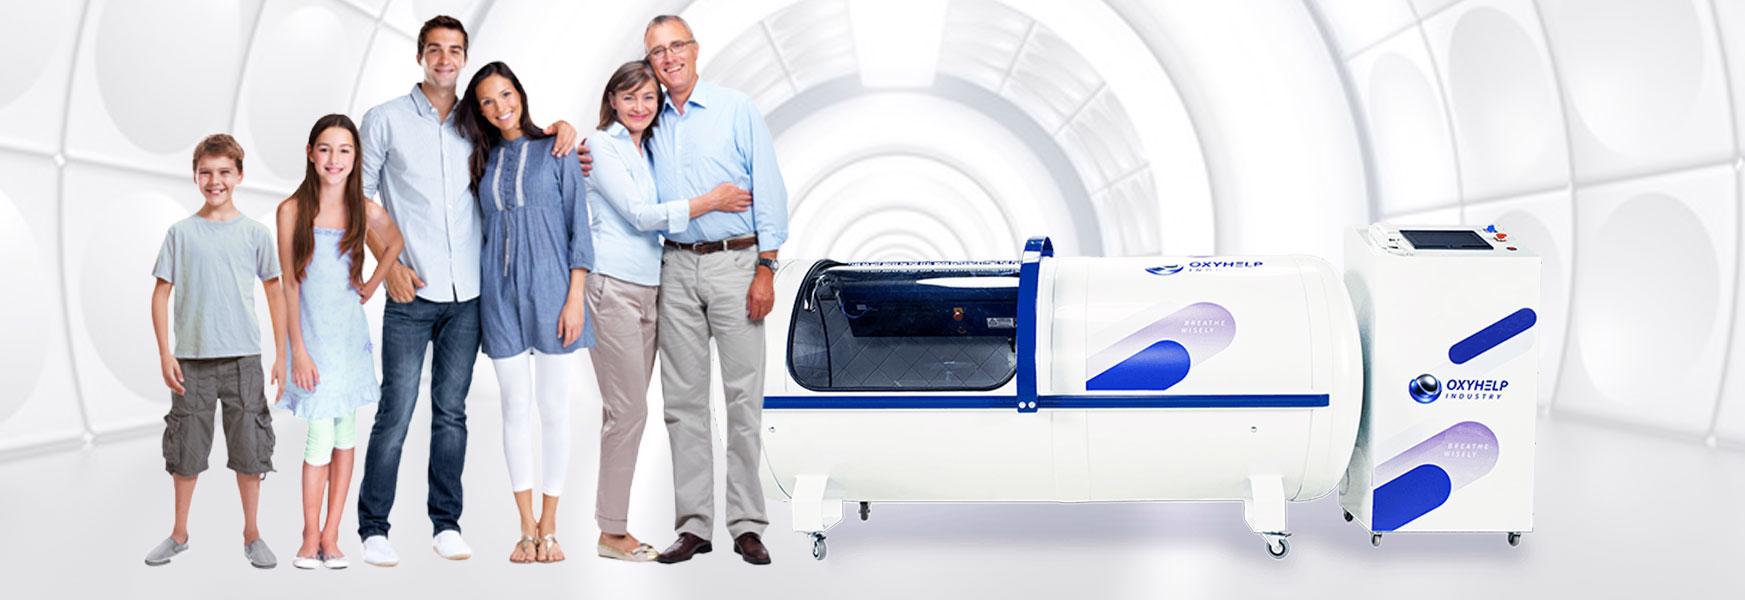 Kyslíková hyperbarická komora je již dostupná i pro Vás!  - foto 7